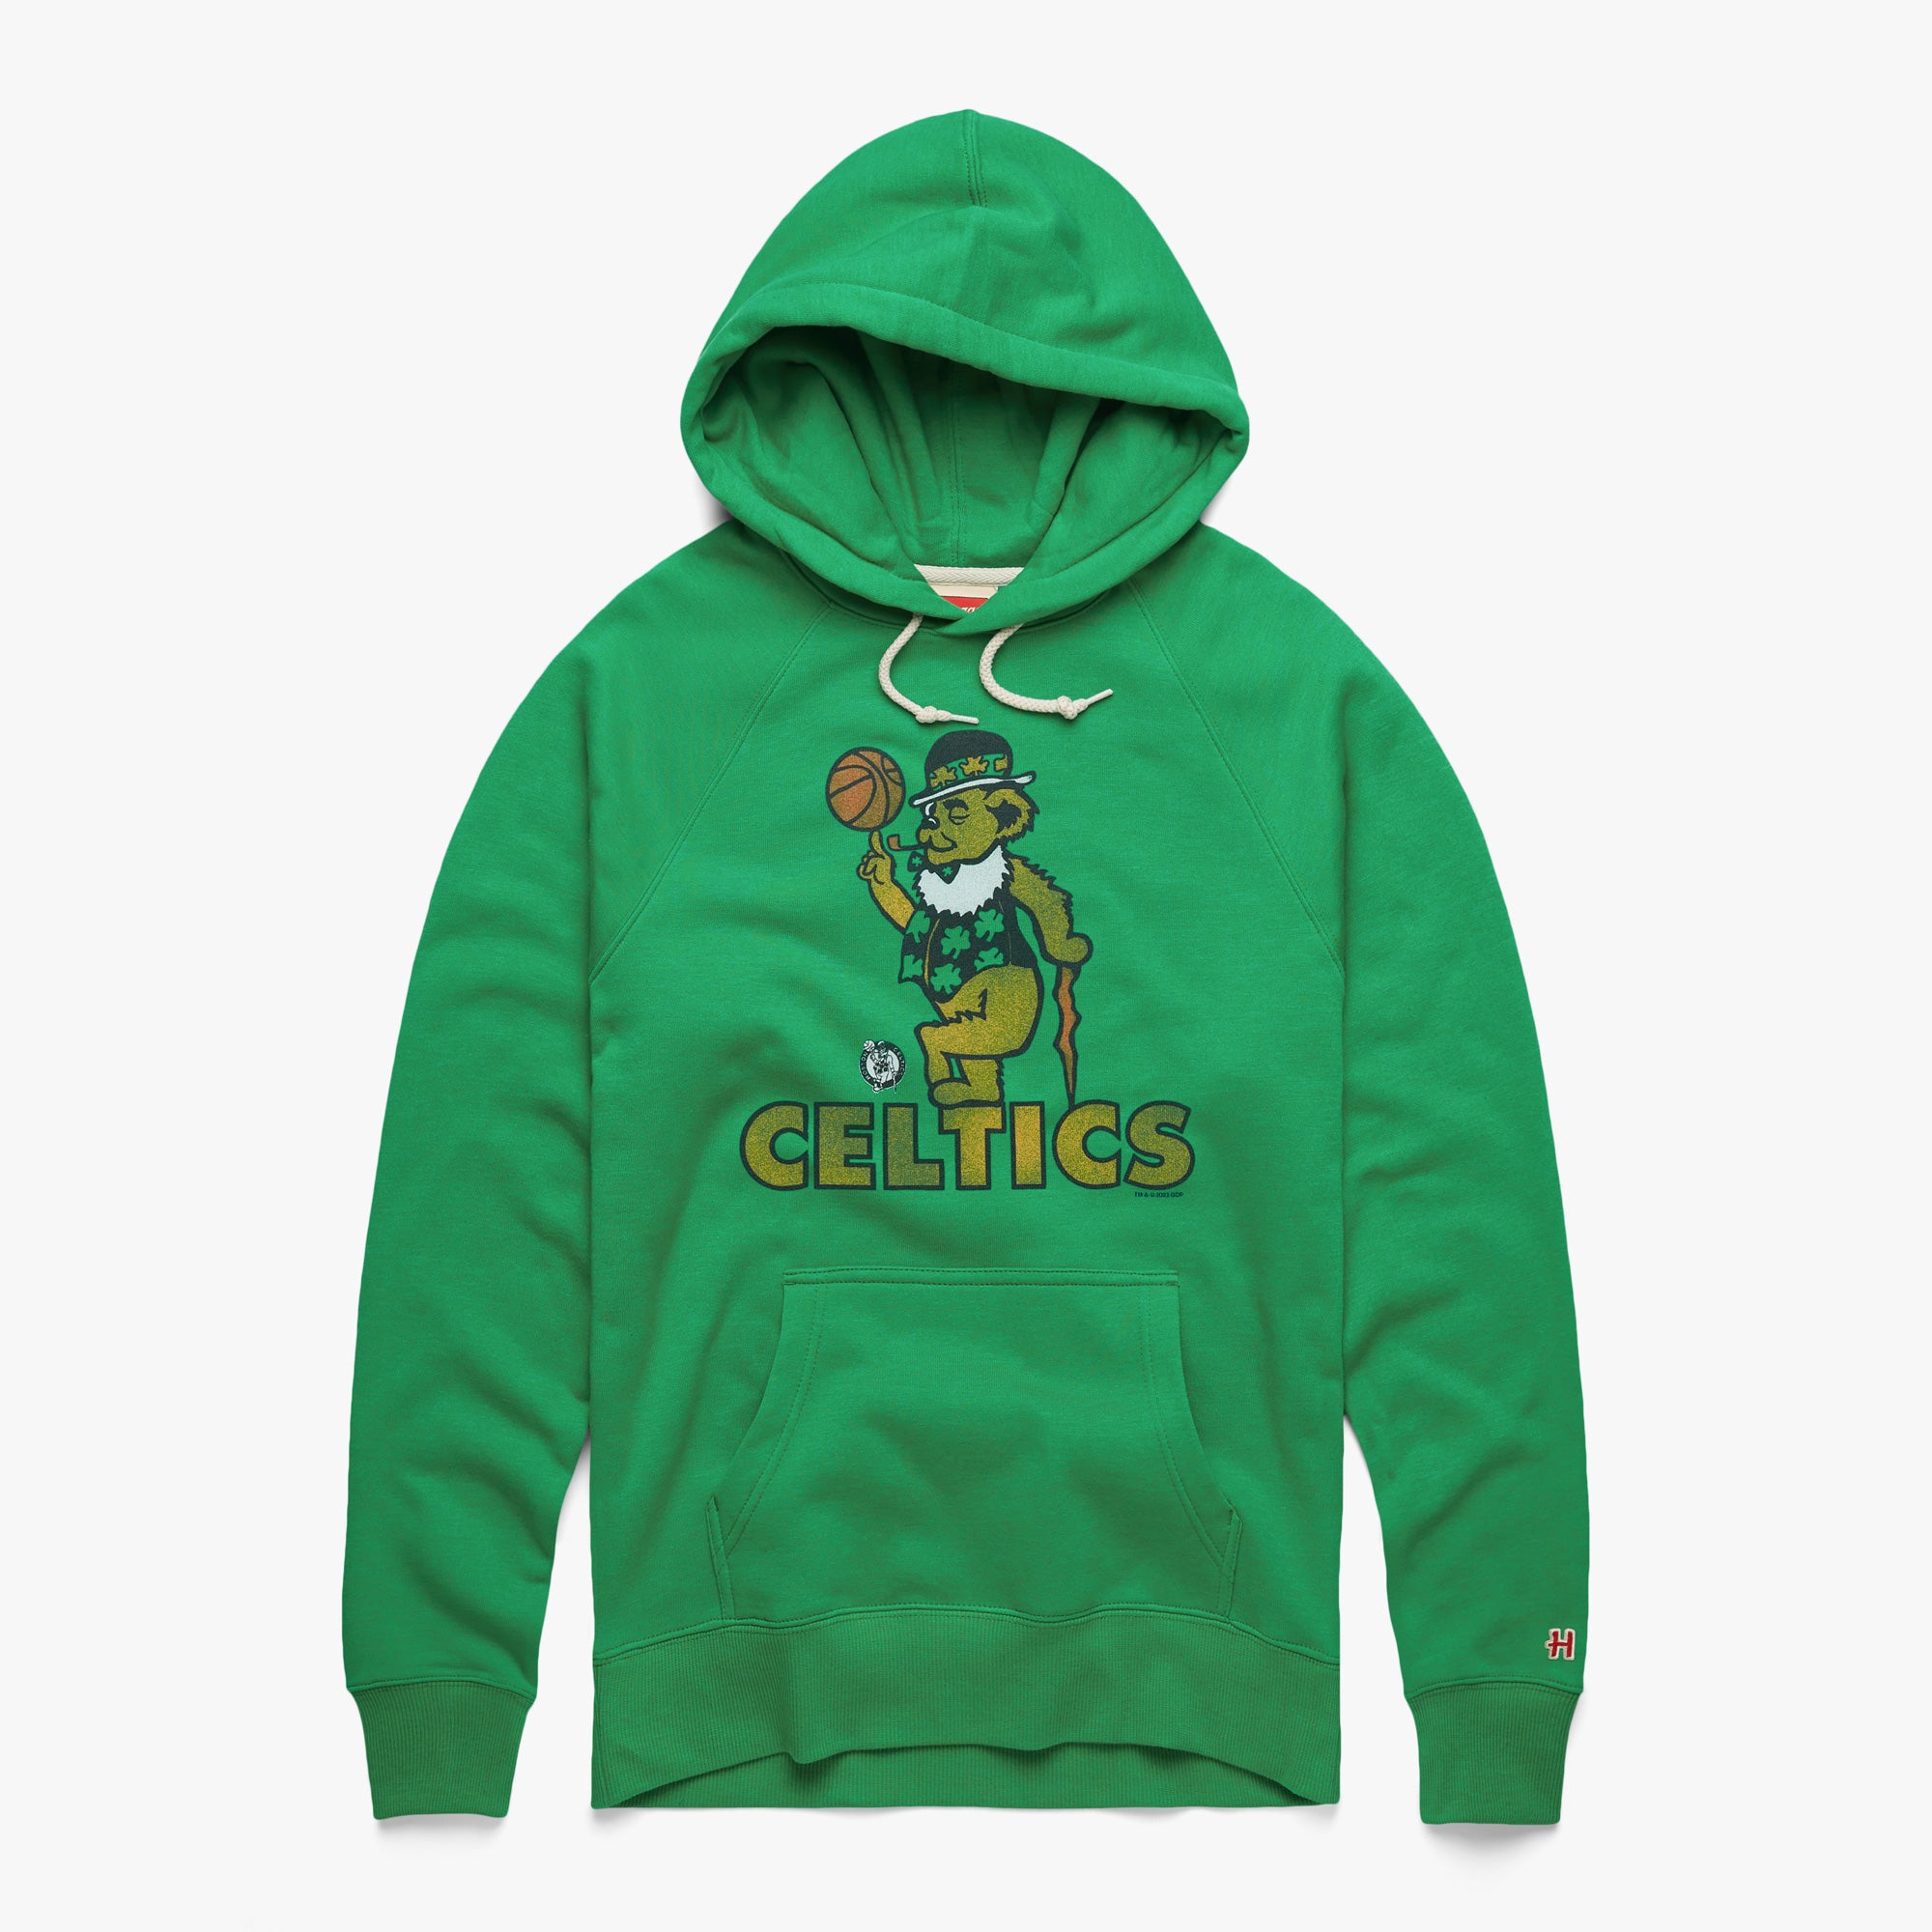 Celtics x grateful dead green shirt, hoodie, sweater, long sleeve and tank  top